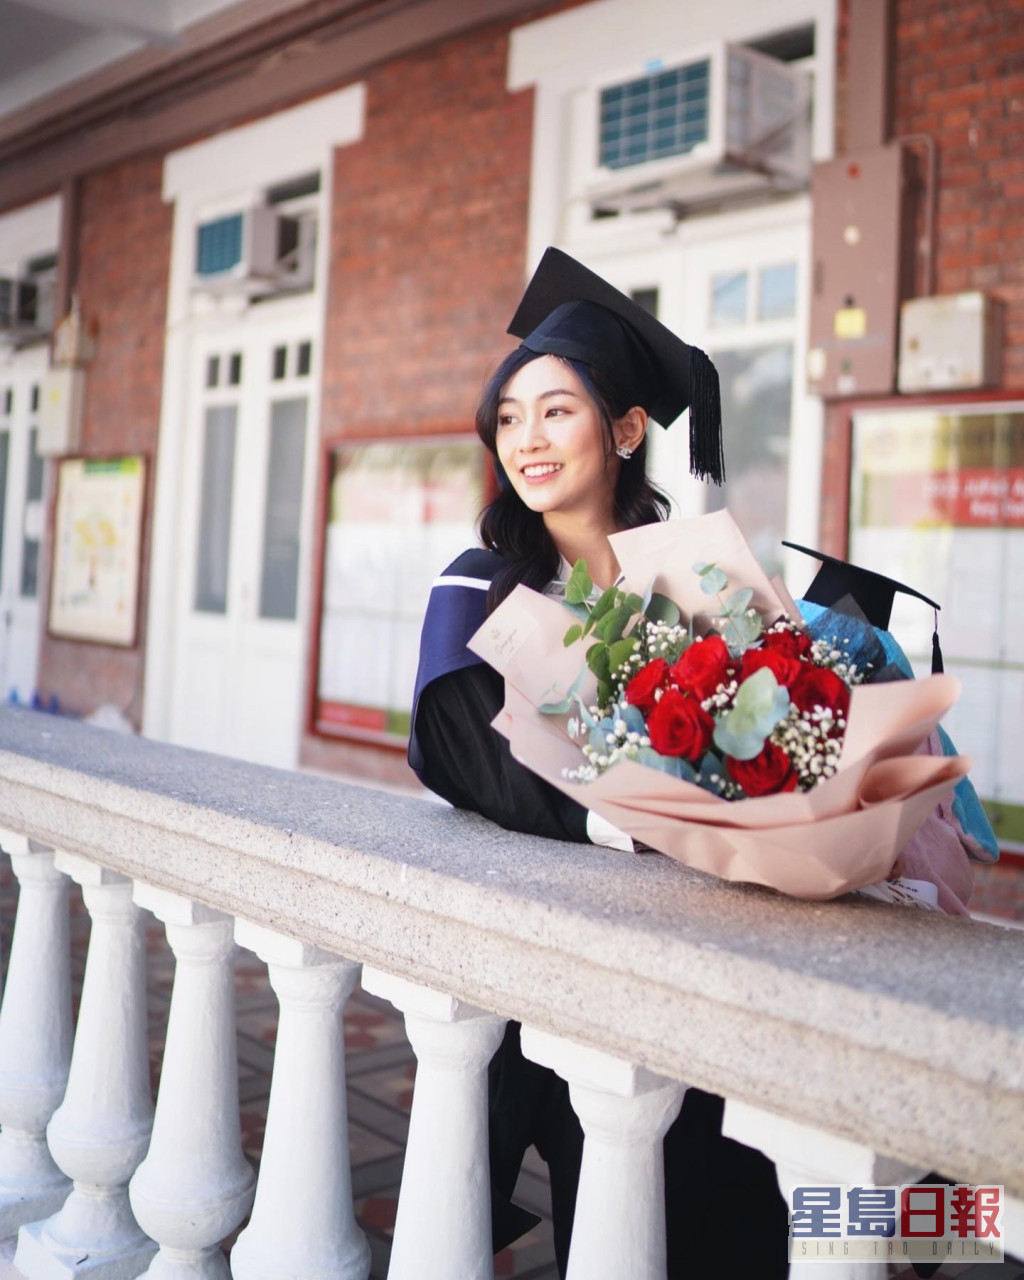 郭柏妍毕业于香港大学食物安全管理硕士课程，是该届港姐高材生之一。